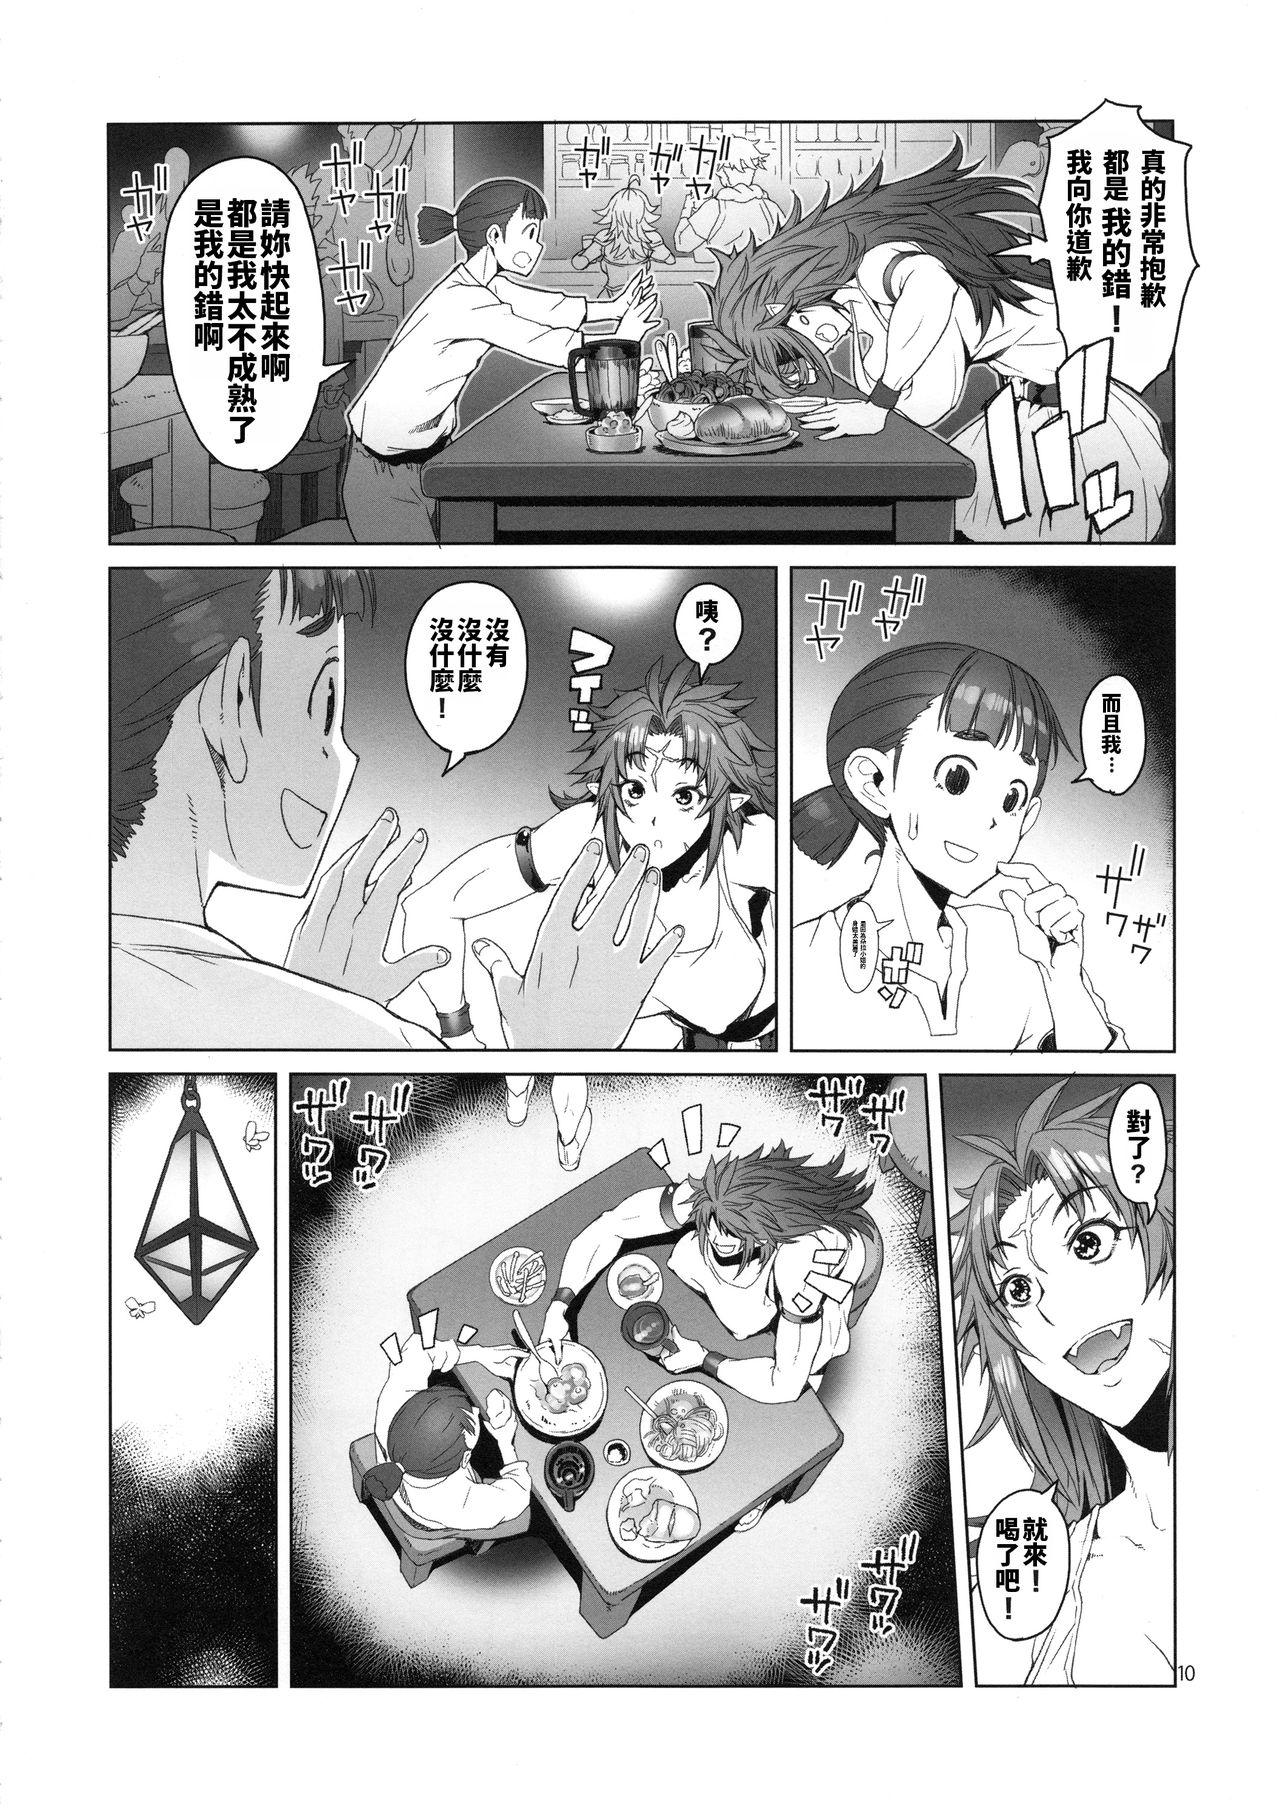 Girlongirl hiiro no tui to muku no miya - Original Anus - Page 10